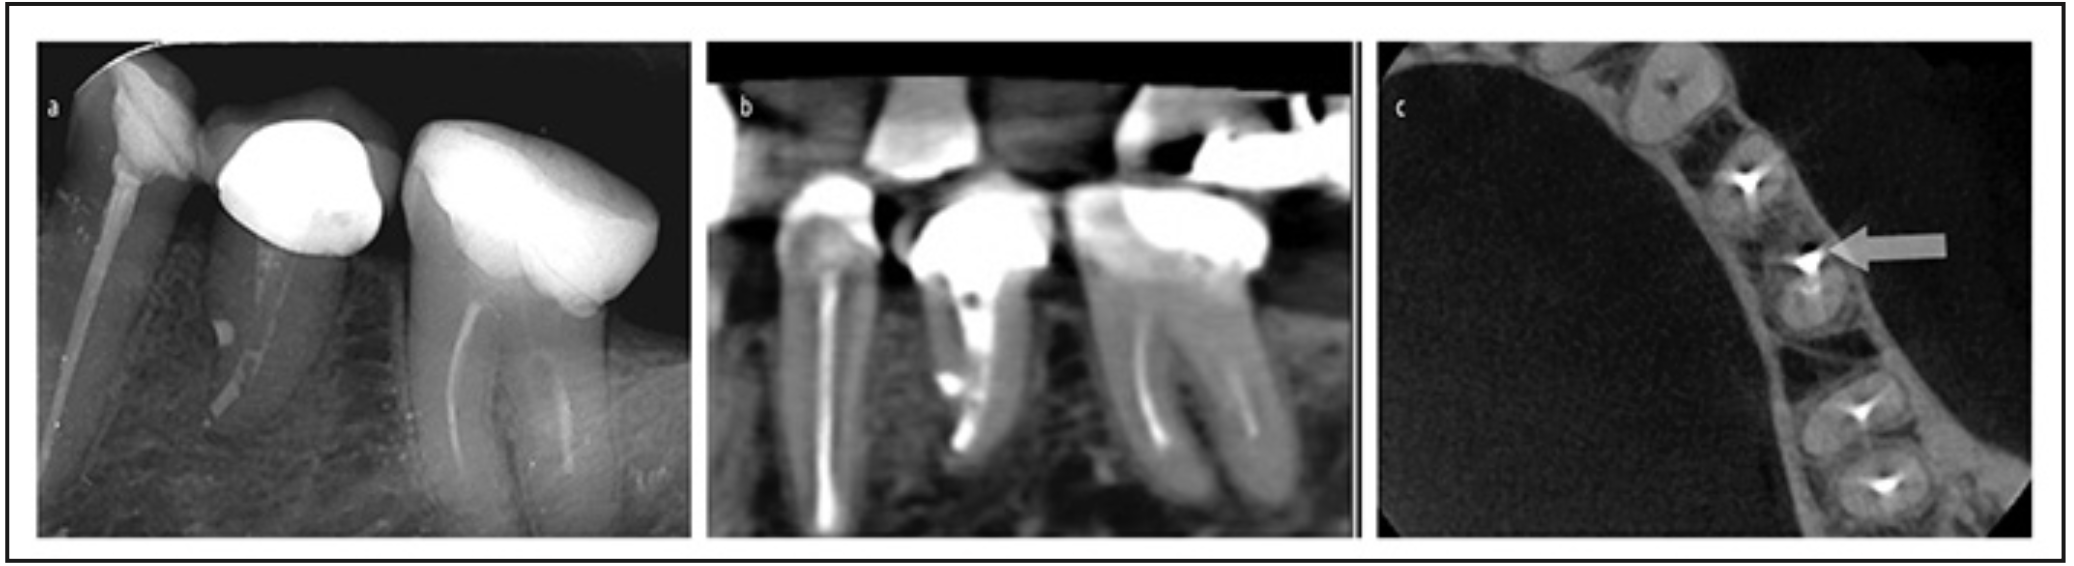 Figura 5. A): radiografía de control 12 meses con el diente rehabilitado. B): corte sagital tomográfico 2 años post operatorio. C): corte transversal tomográfico 2 años post operatorio.